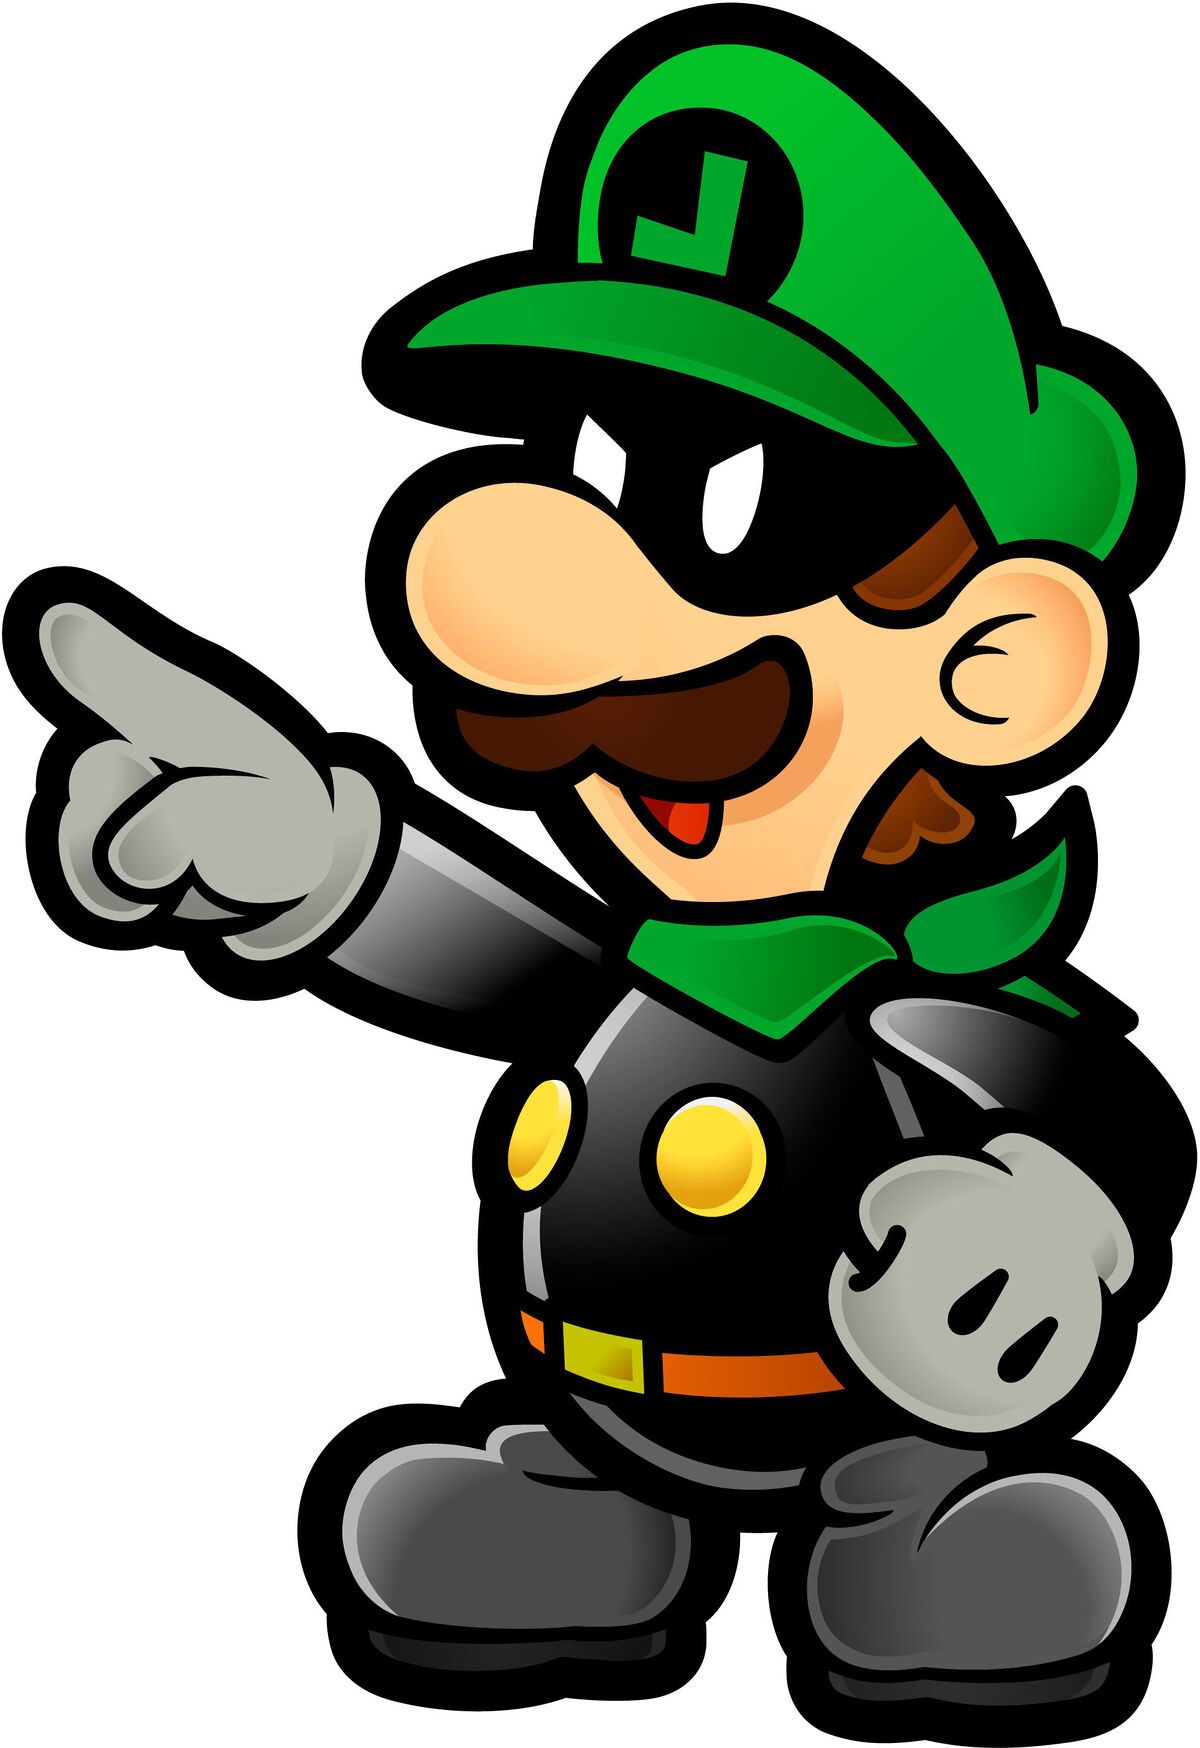 Mr L Super Mario Wiki The Mario Encyclopedia - mr mario png roblox